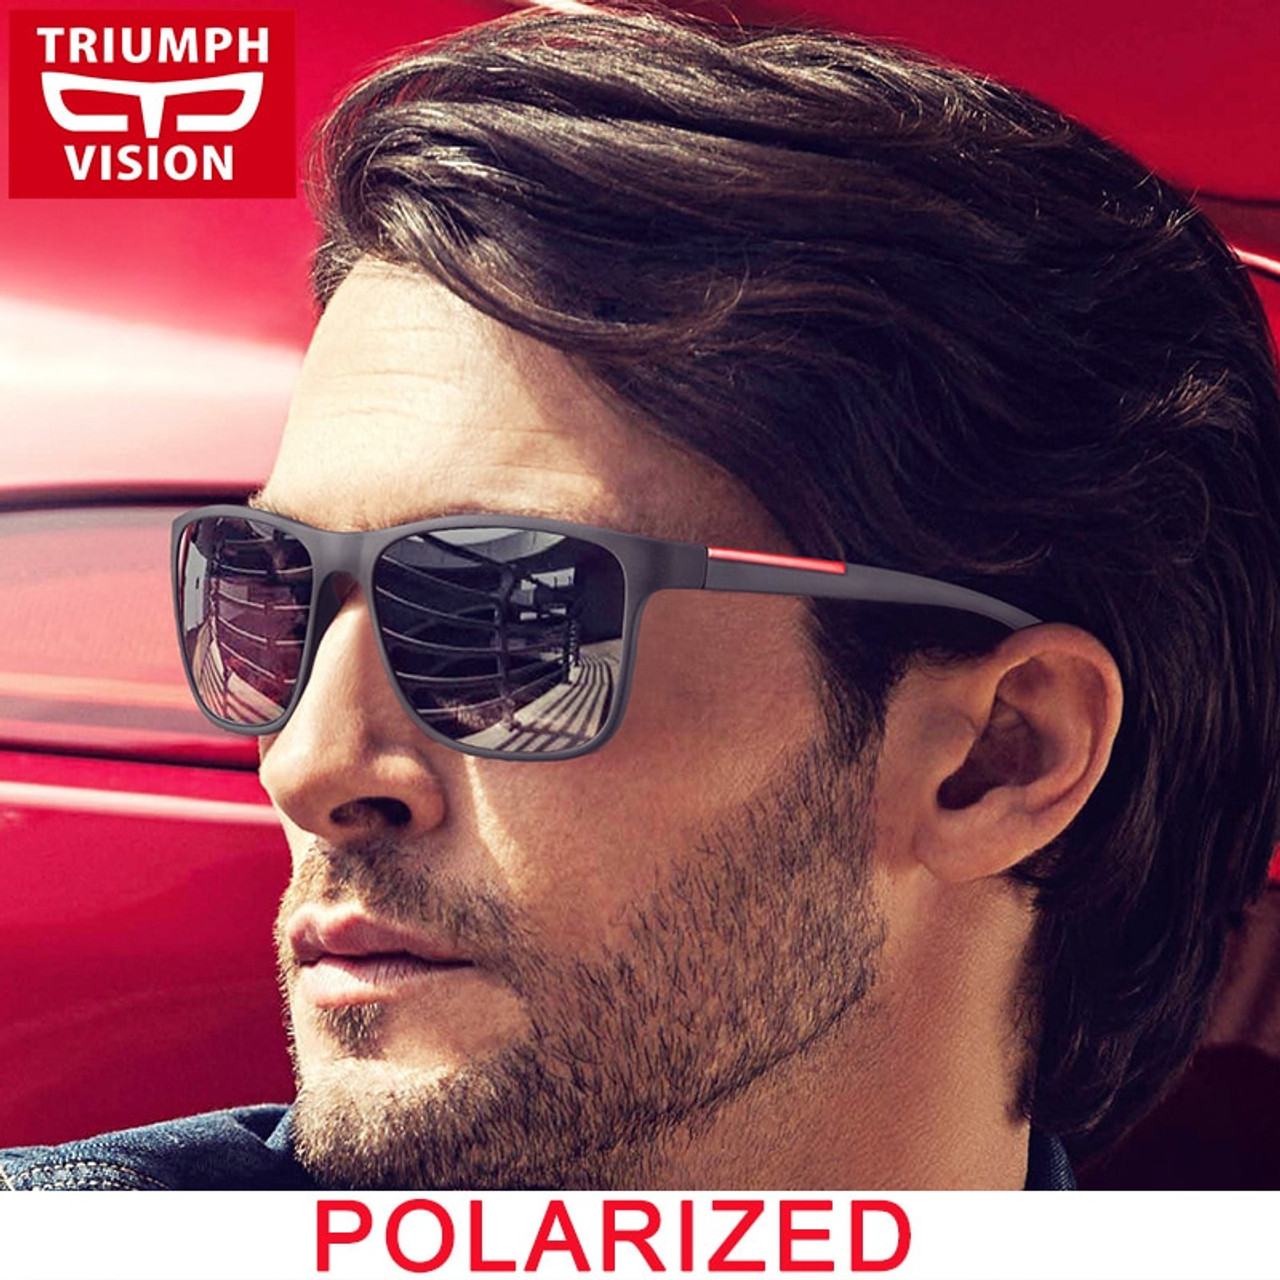 TRIUMPH VISION Oculos Masculino Polarized Sunglasses Men Driving Red Line Sun Glasses for Men Gradient UV400 70344.1549275587